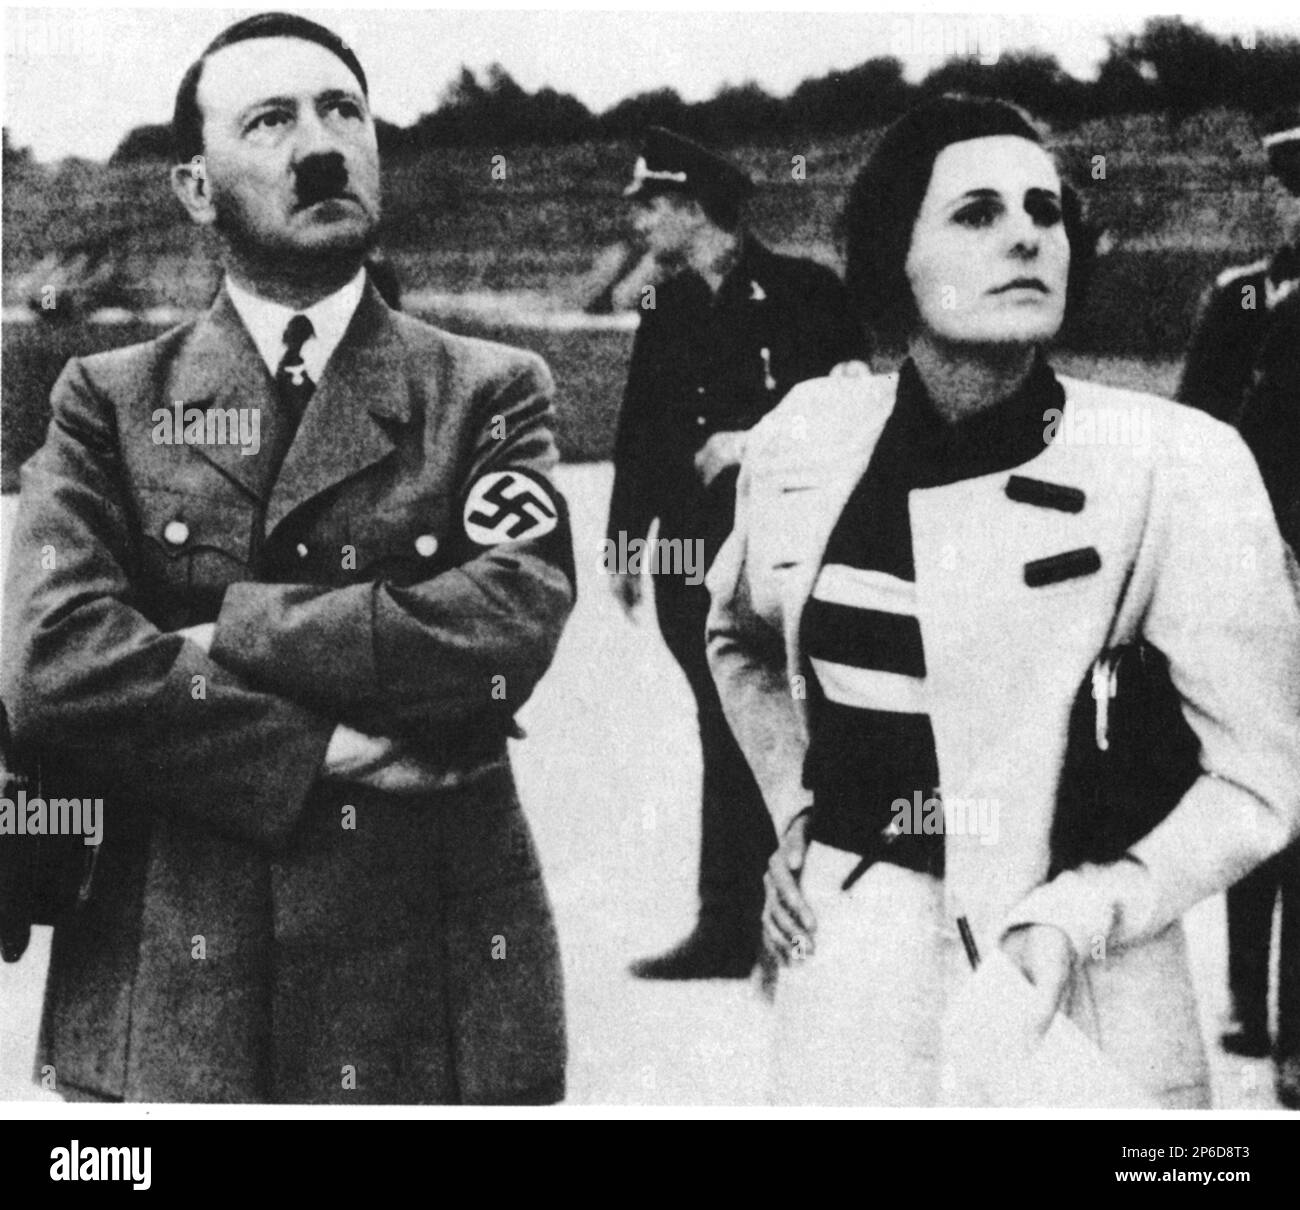 1934 , BERLIN , DEUTSCHLAND : LENI RIEFENSTAHL ( 1902 - 2003 ) , deutsche Schauspielerin und Regisseurin mit Diktator ADOLF HITLER , die über die Vorbereitungen für die Sixth Days Nazist Party Rally in Nürnberg bergt . Leni Riefenstahl filmte aus diesem Anlass den berühmtesten dokumentarischen TRIUMPH DES TESTAMENTS ( 1935 - Il trionfo della volontà ). - NAZI DIVA - NAZIST - NAZISTA - NAZISMO - VAMP - regista cinematografico - ritratto - Zweiter Weltkrieg - SECONDA GUERRA MONDIALE - 2. Weltkrieg - Dokumentarfilm - Dokumentarismo --- Archivio GBB Stockfoto